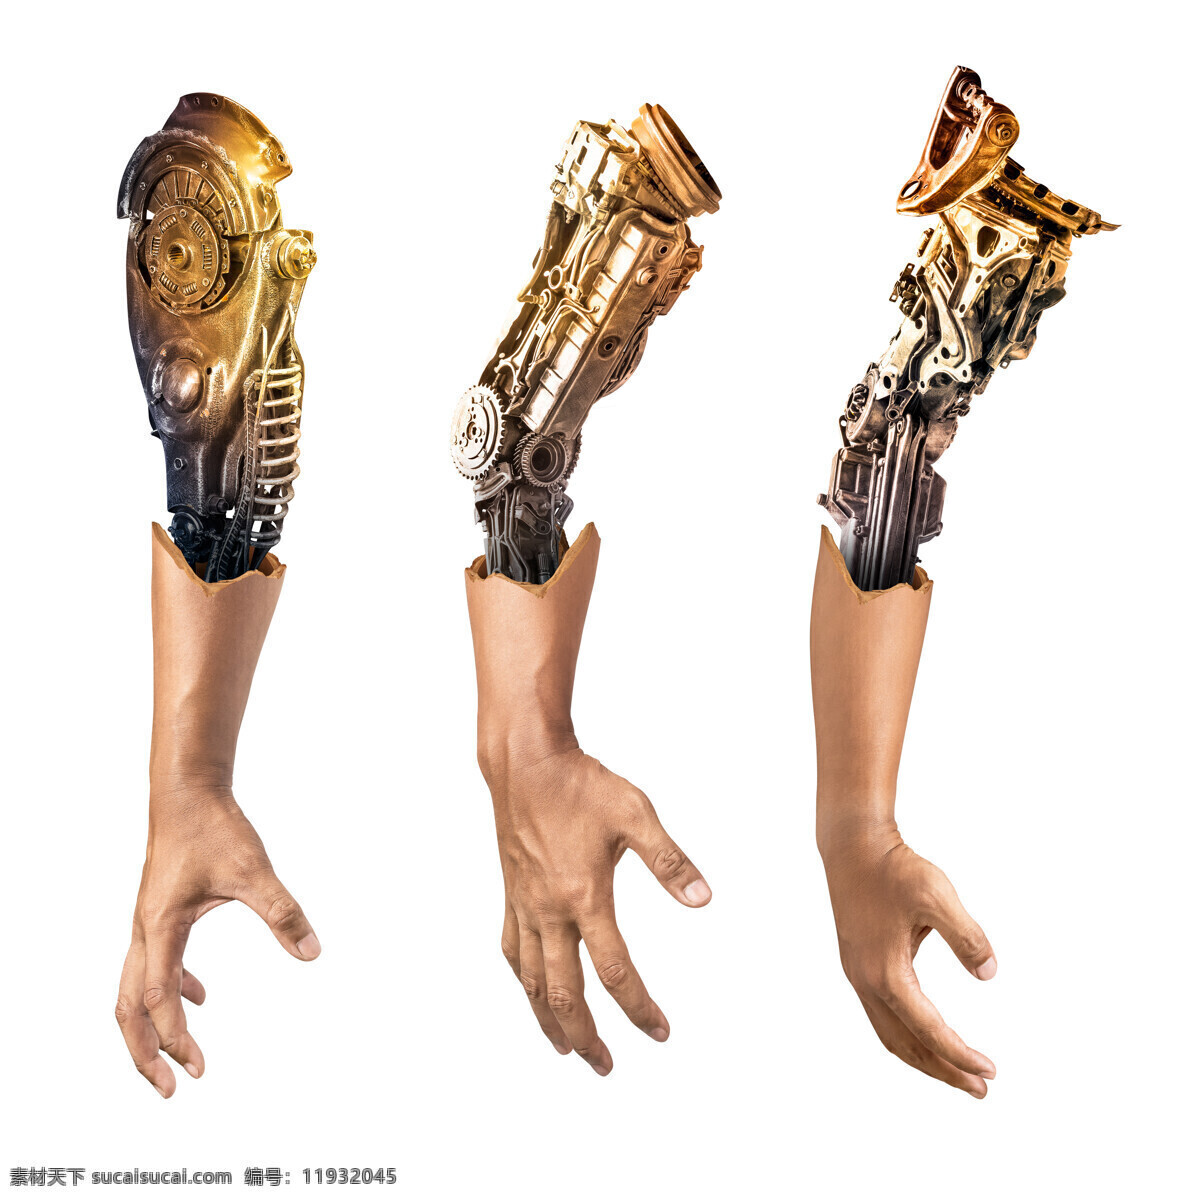 机械手臂 未来战士 机器人仿生人 科幻手臂 朋克手臂 手臂 手 机器人 机器手 钢铁手臂 机器人的手臂 义肢 高科技手臂 科技手 科幻素材 科幻人物 未来科技 超级人类 免抠物品 人物图库 其他人物